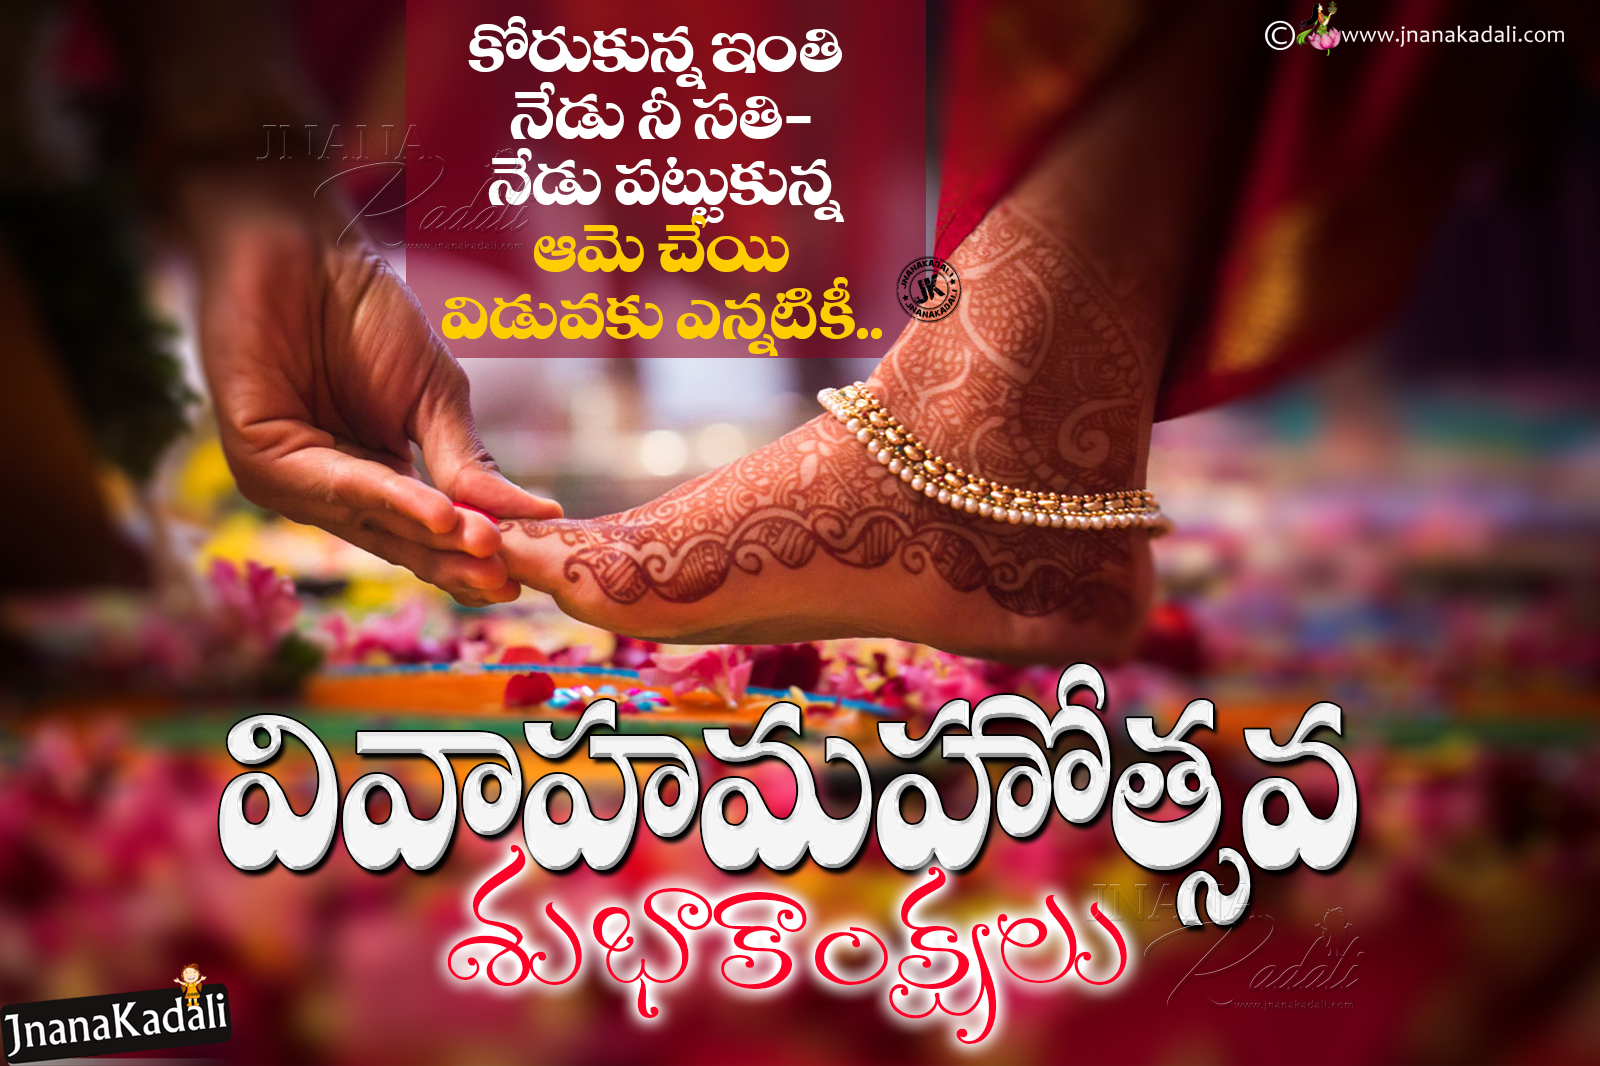 Happy Telugu Marriage Day Wishes Pelliroju Subhakankshalu